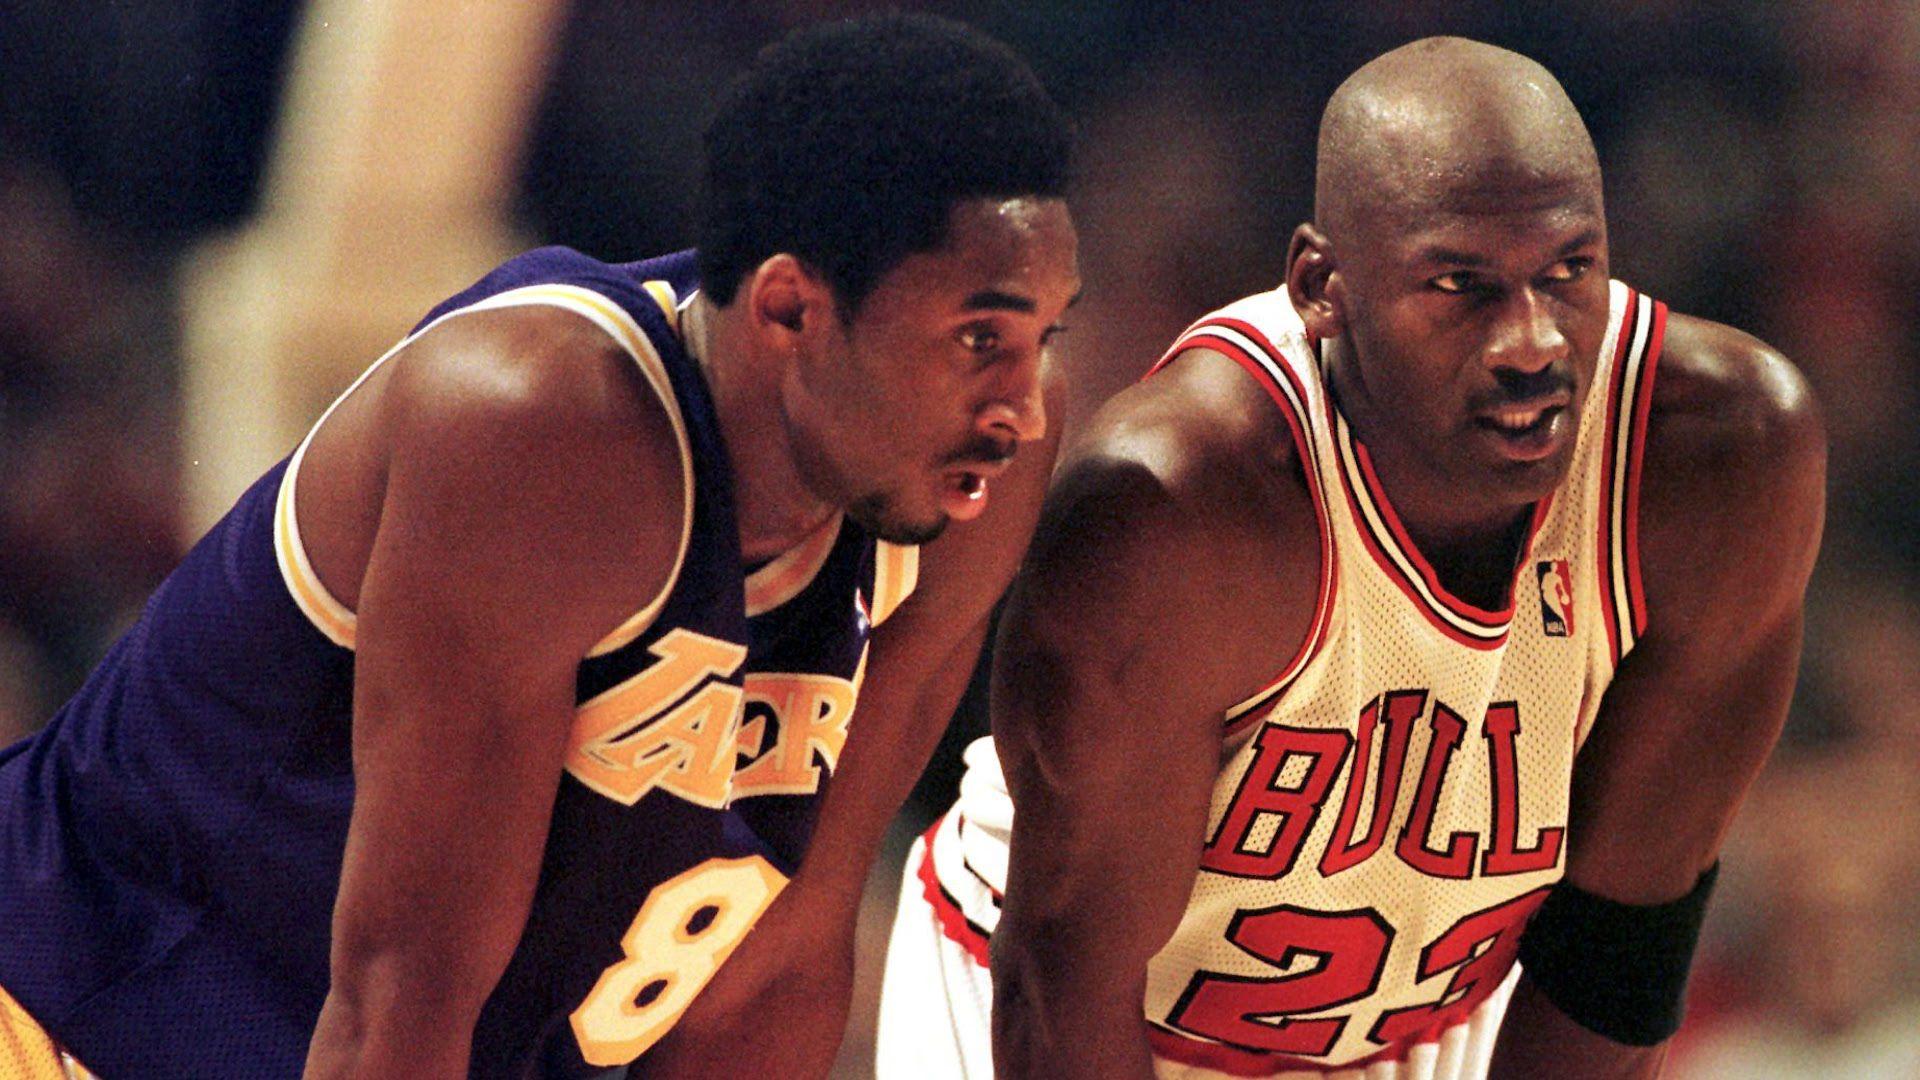 Bestof You: Kobe Bryant And Michael Jordan Wallpaper Of The Decade ...